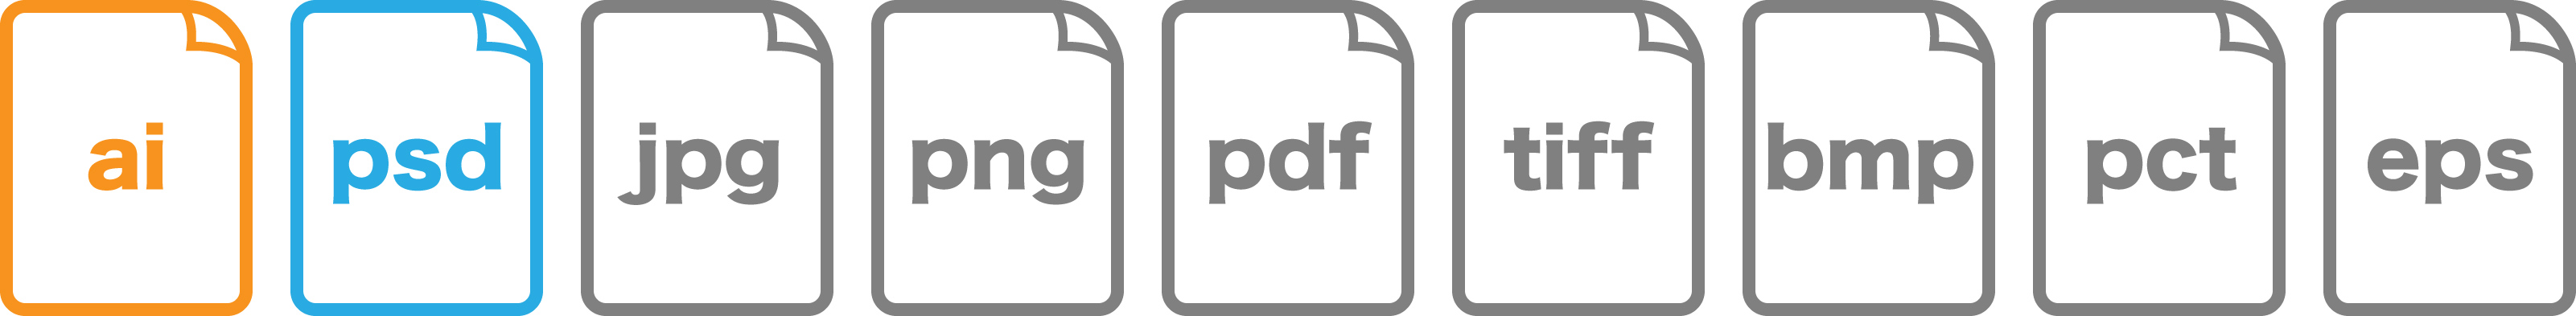 対応データ形式（ai/psd/jpg/png/pdf/tiff/bmp/pct/eps）